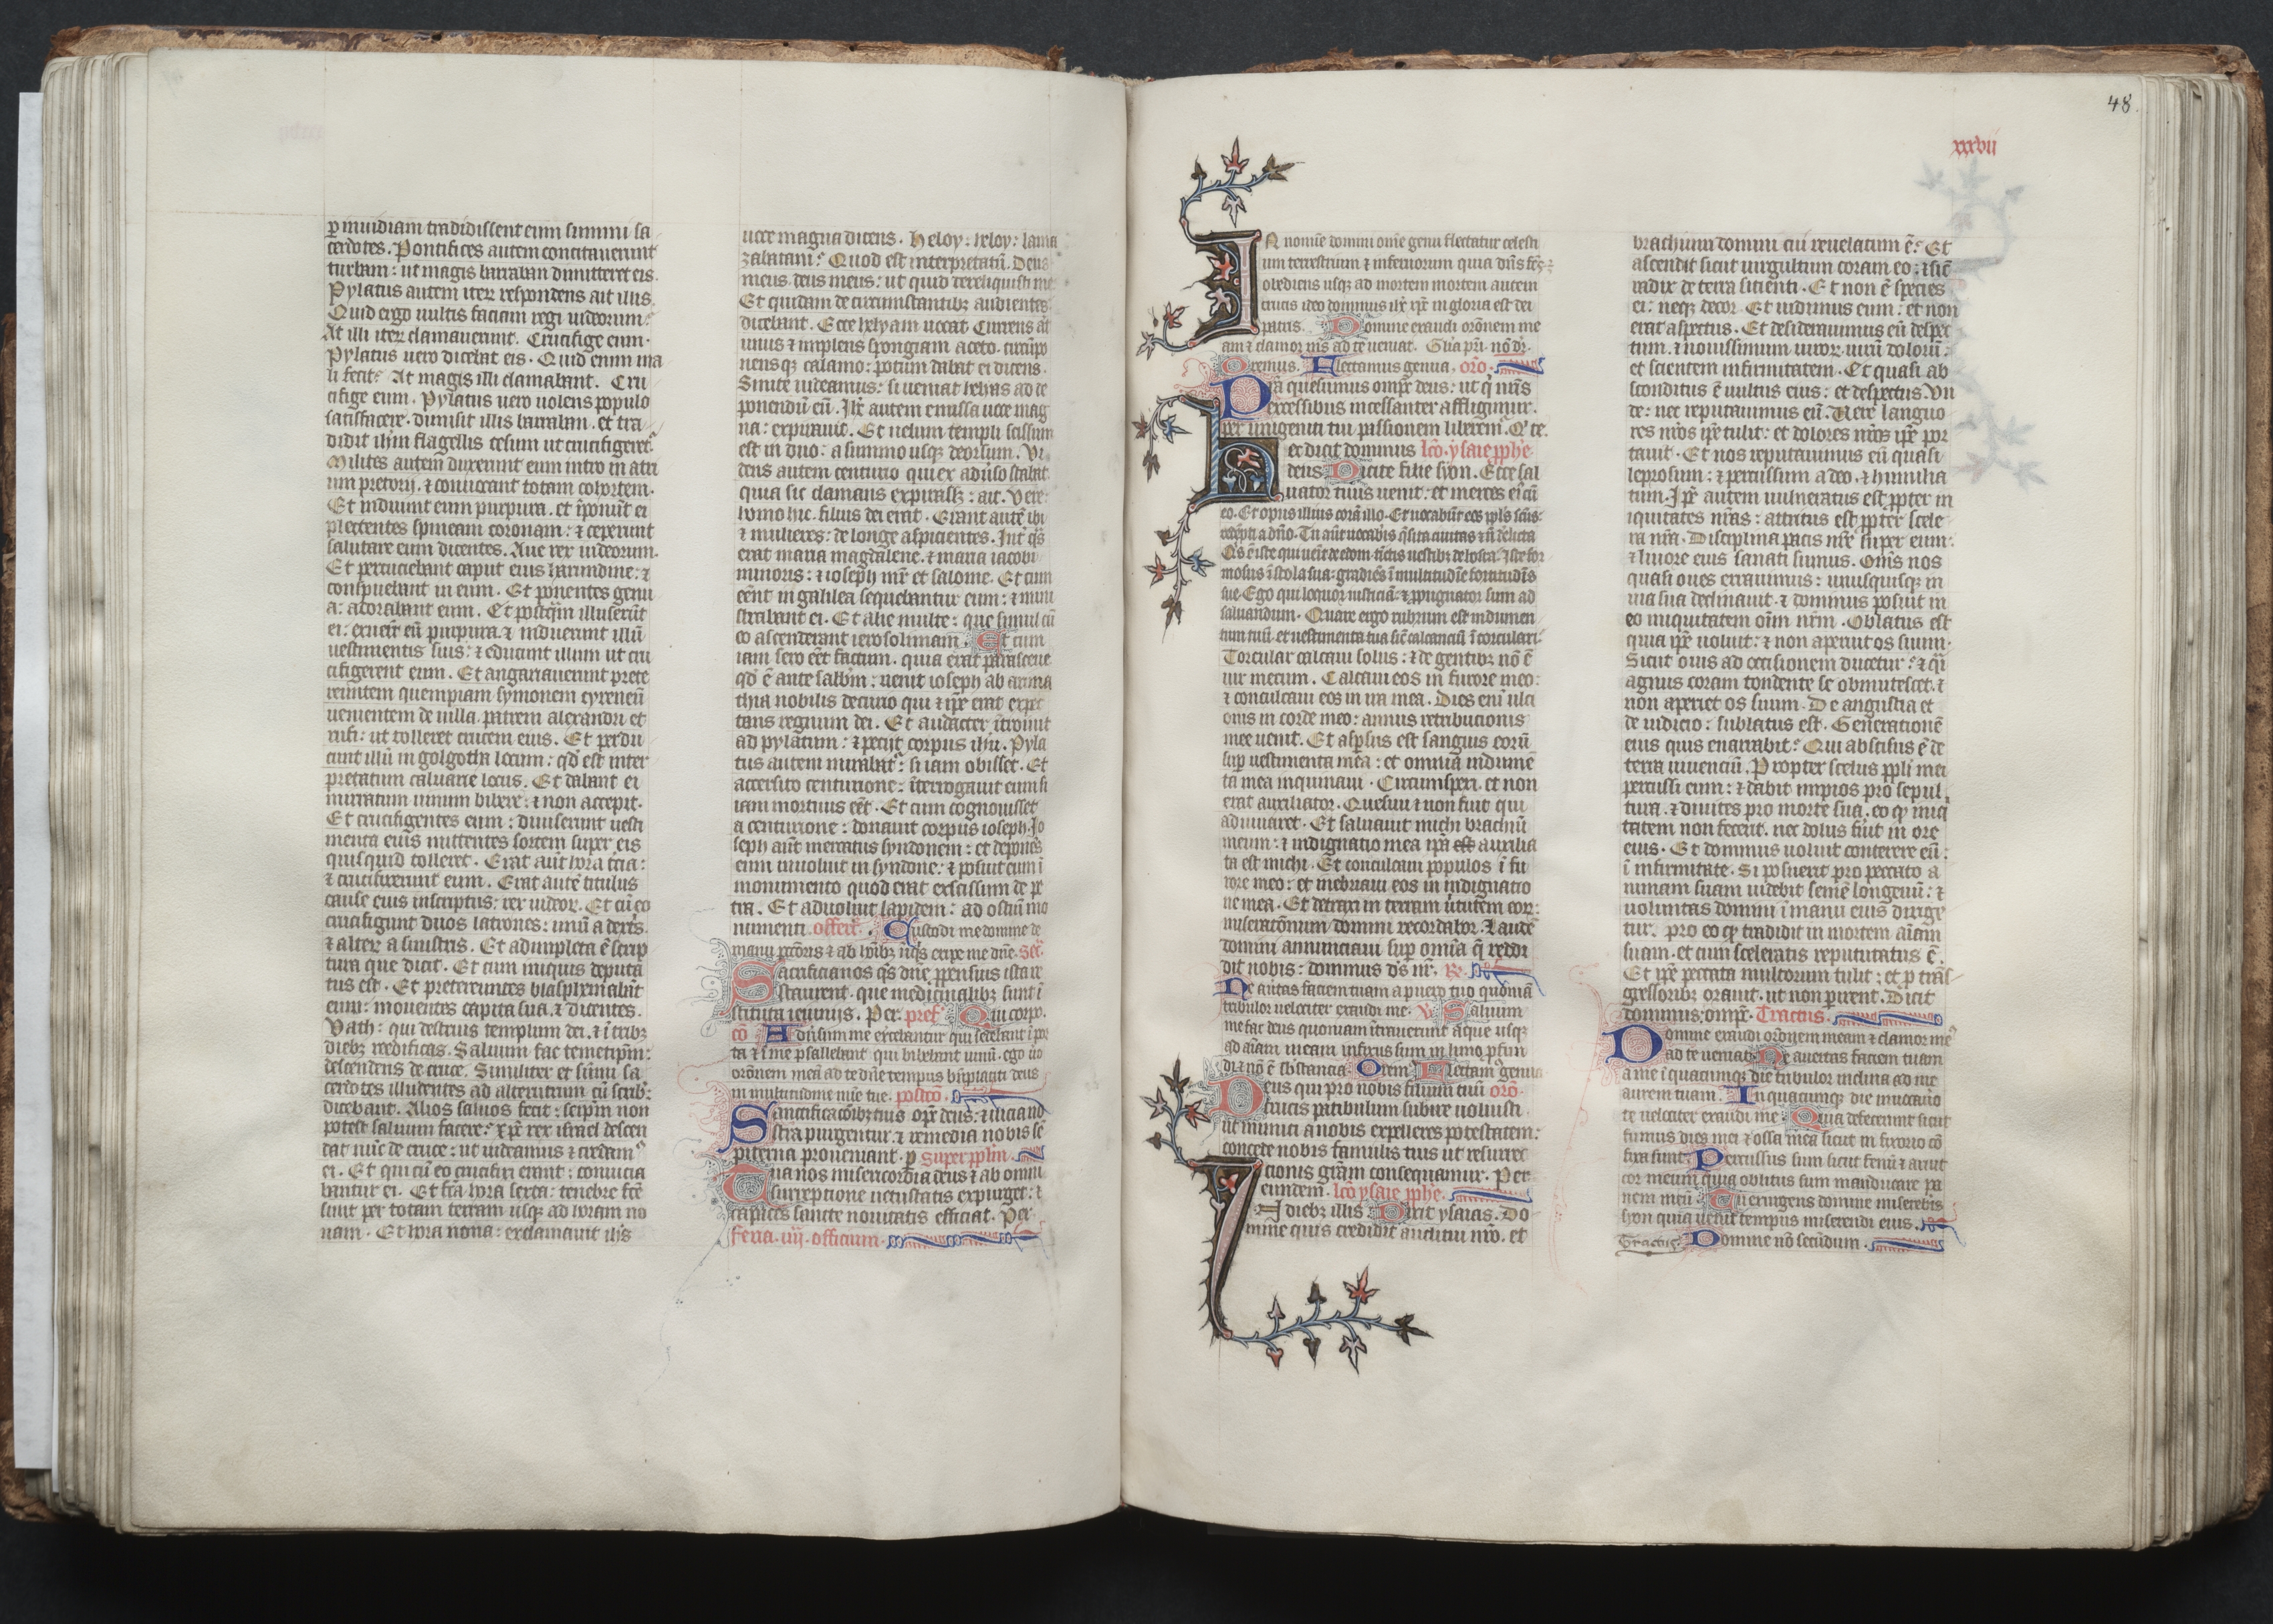 The Gotha Missal:  Fol. 48r, Text